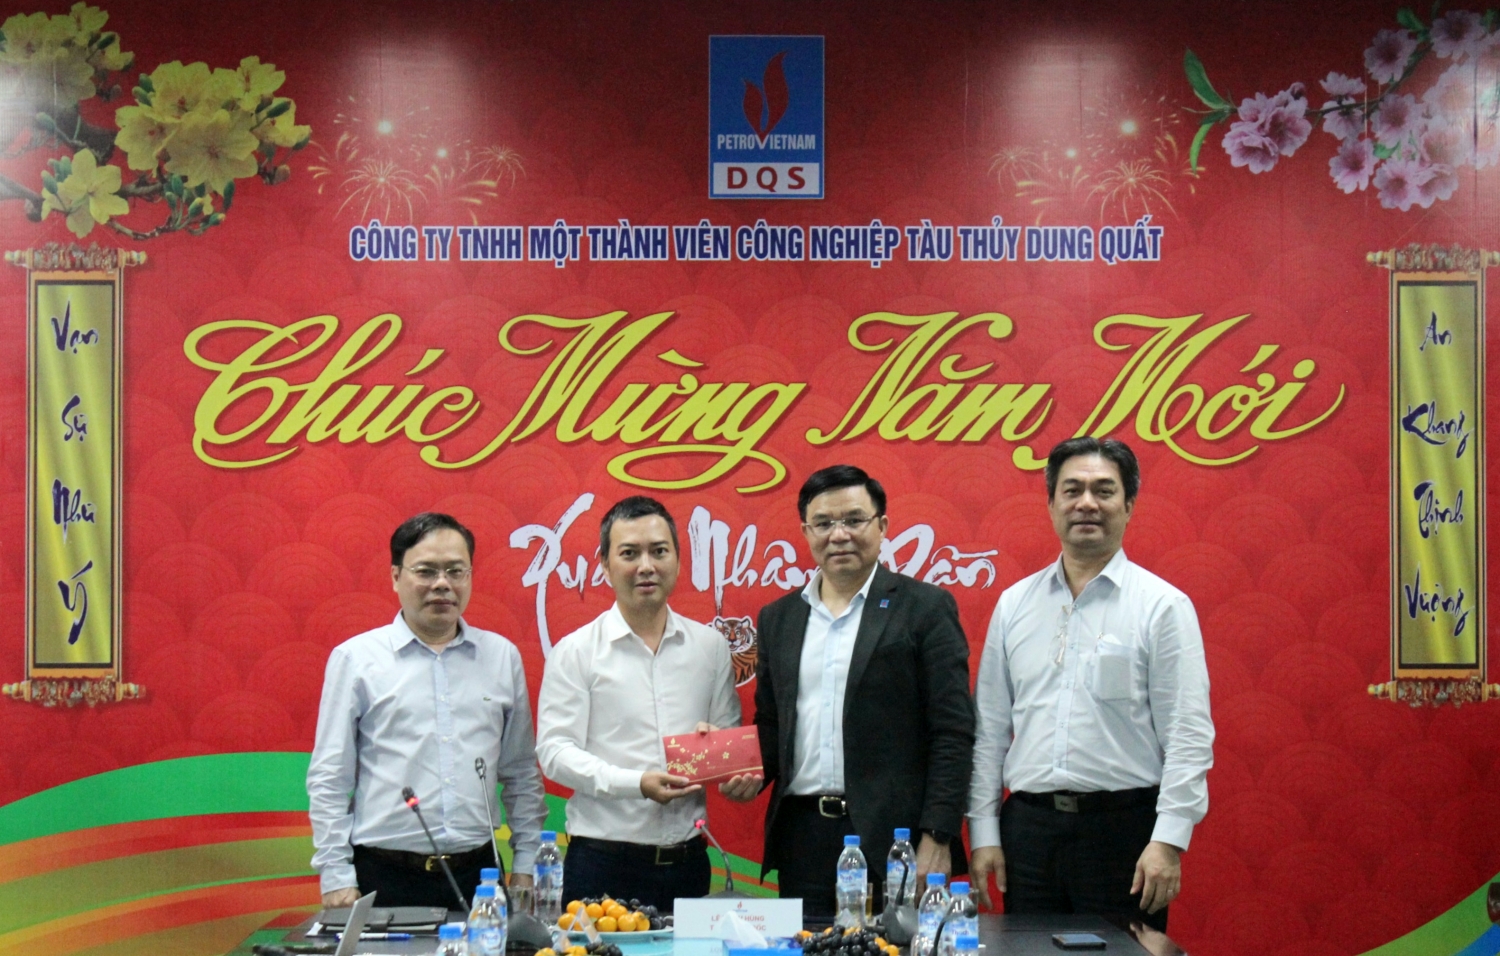 Tổng Giám đốc Petrovietnam Lê Mạnh Hùng tặng quà lì xì đầu năm cho đại diện tập thể người lao động DQS.